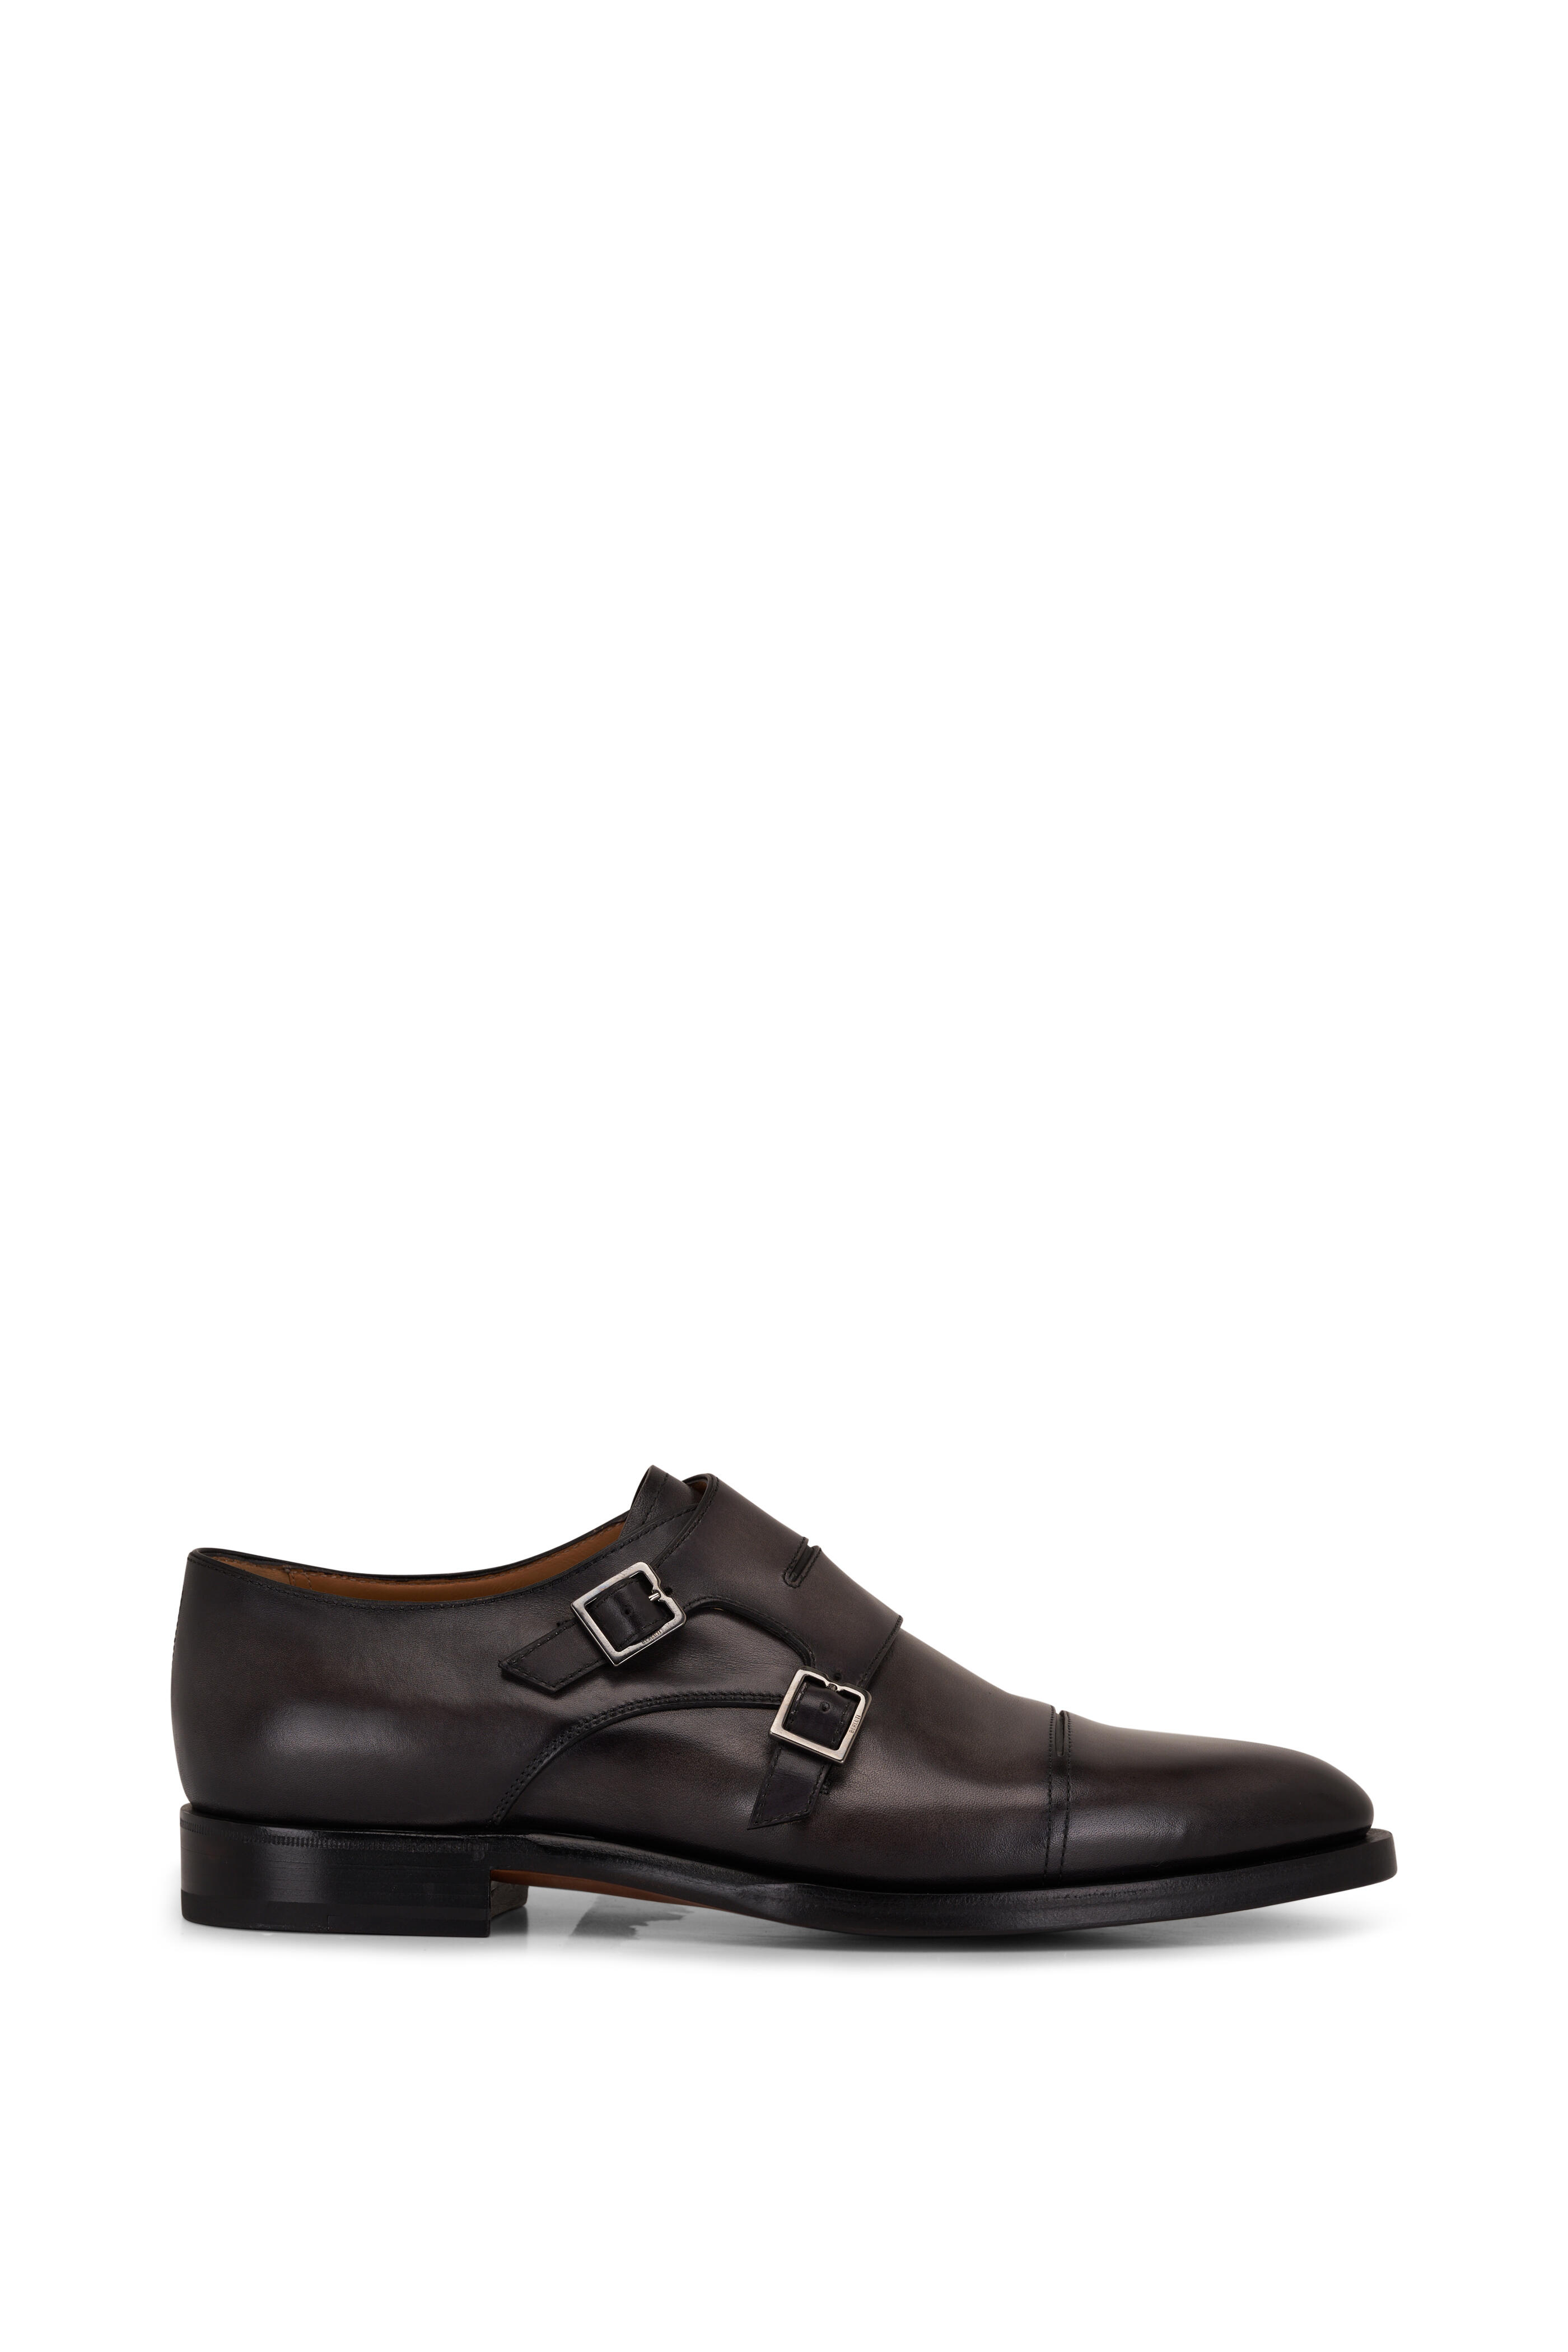 Berluti Brown & Black Leather Men Half Shoe 